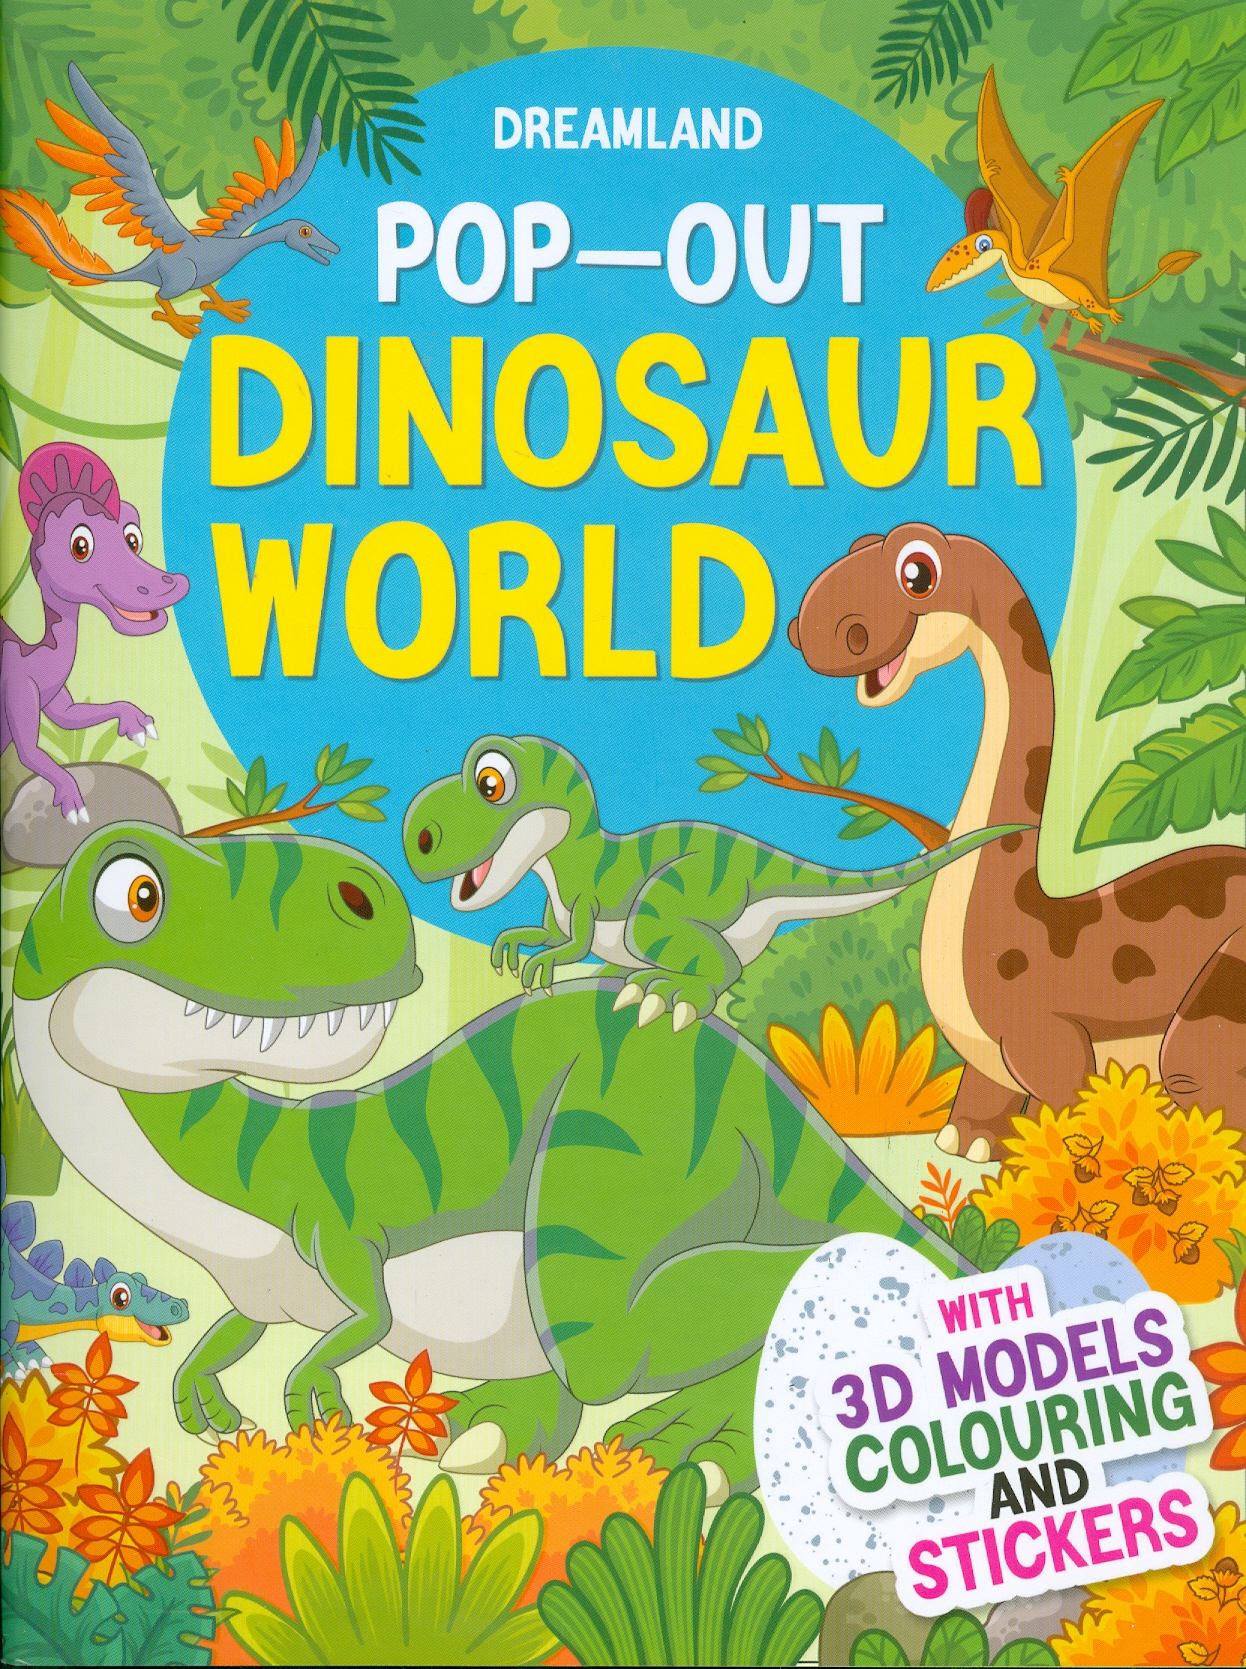 Pop-Out Dinosaur World - With 3D Models Colouring And Stickers (Sách Bật Ra - Thế Giới Khủng Long - Với Hình Dán Và Tô Màu Mô Hình 3D)